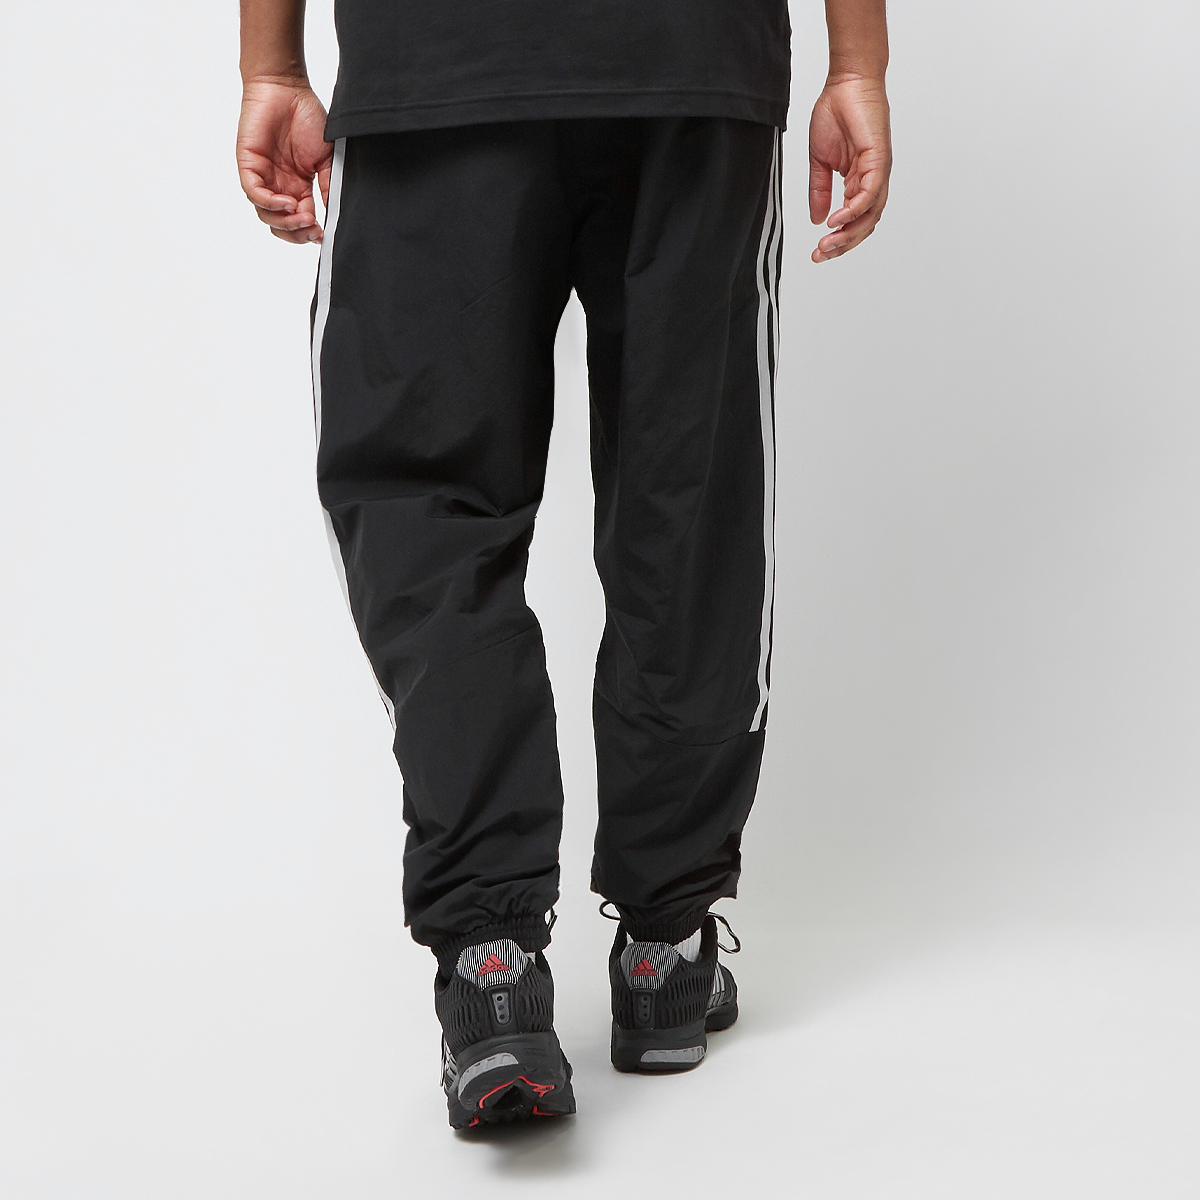 adidas Originals Climacool Jogging Broek Trainingsbroeken Heren black maat: S beschikbare maaten:S M L XL